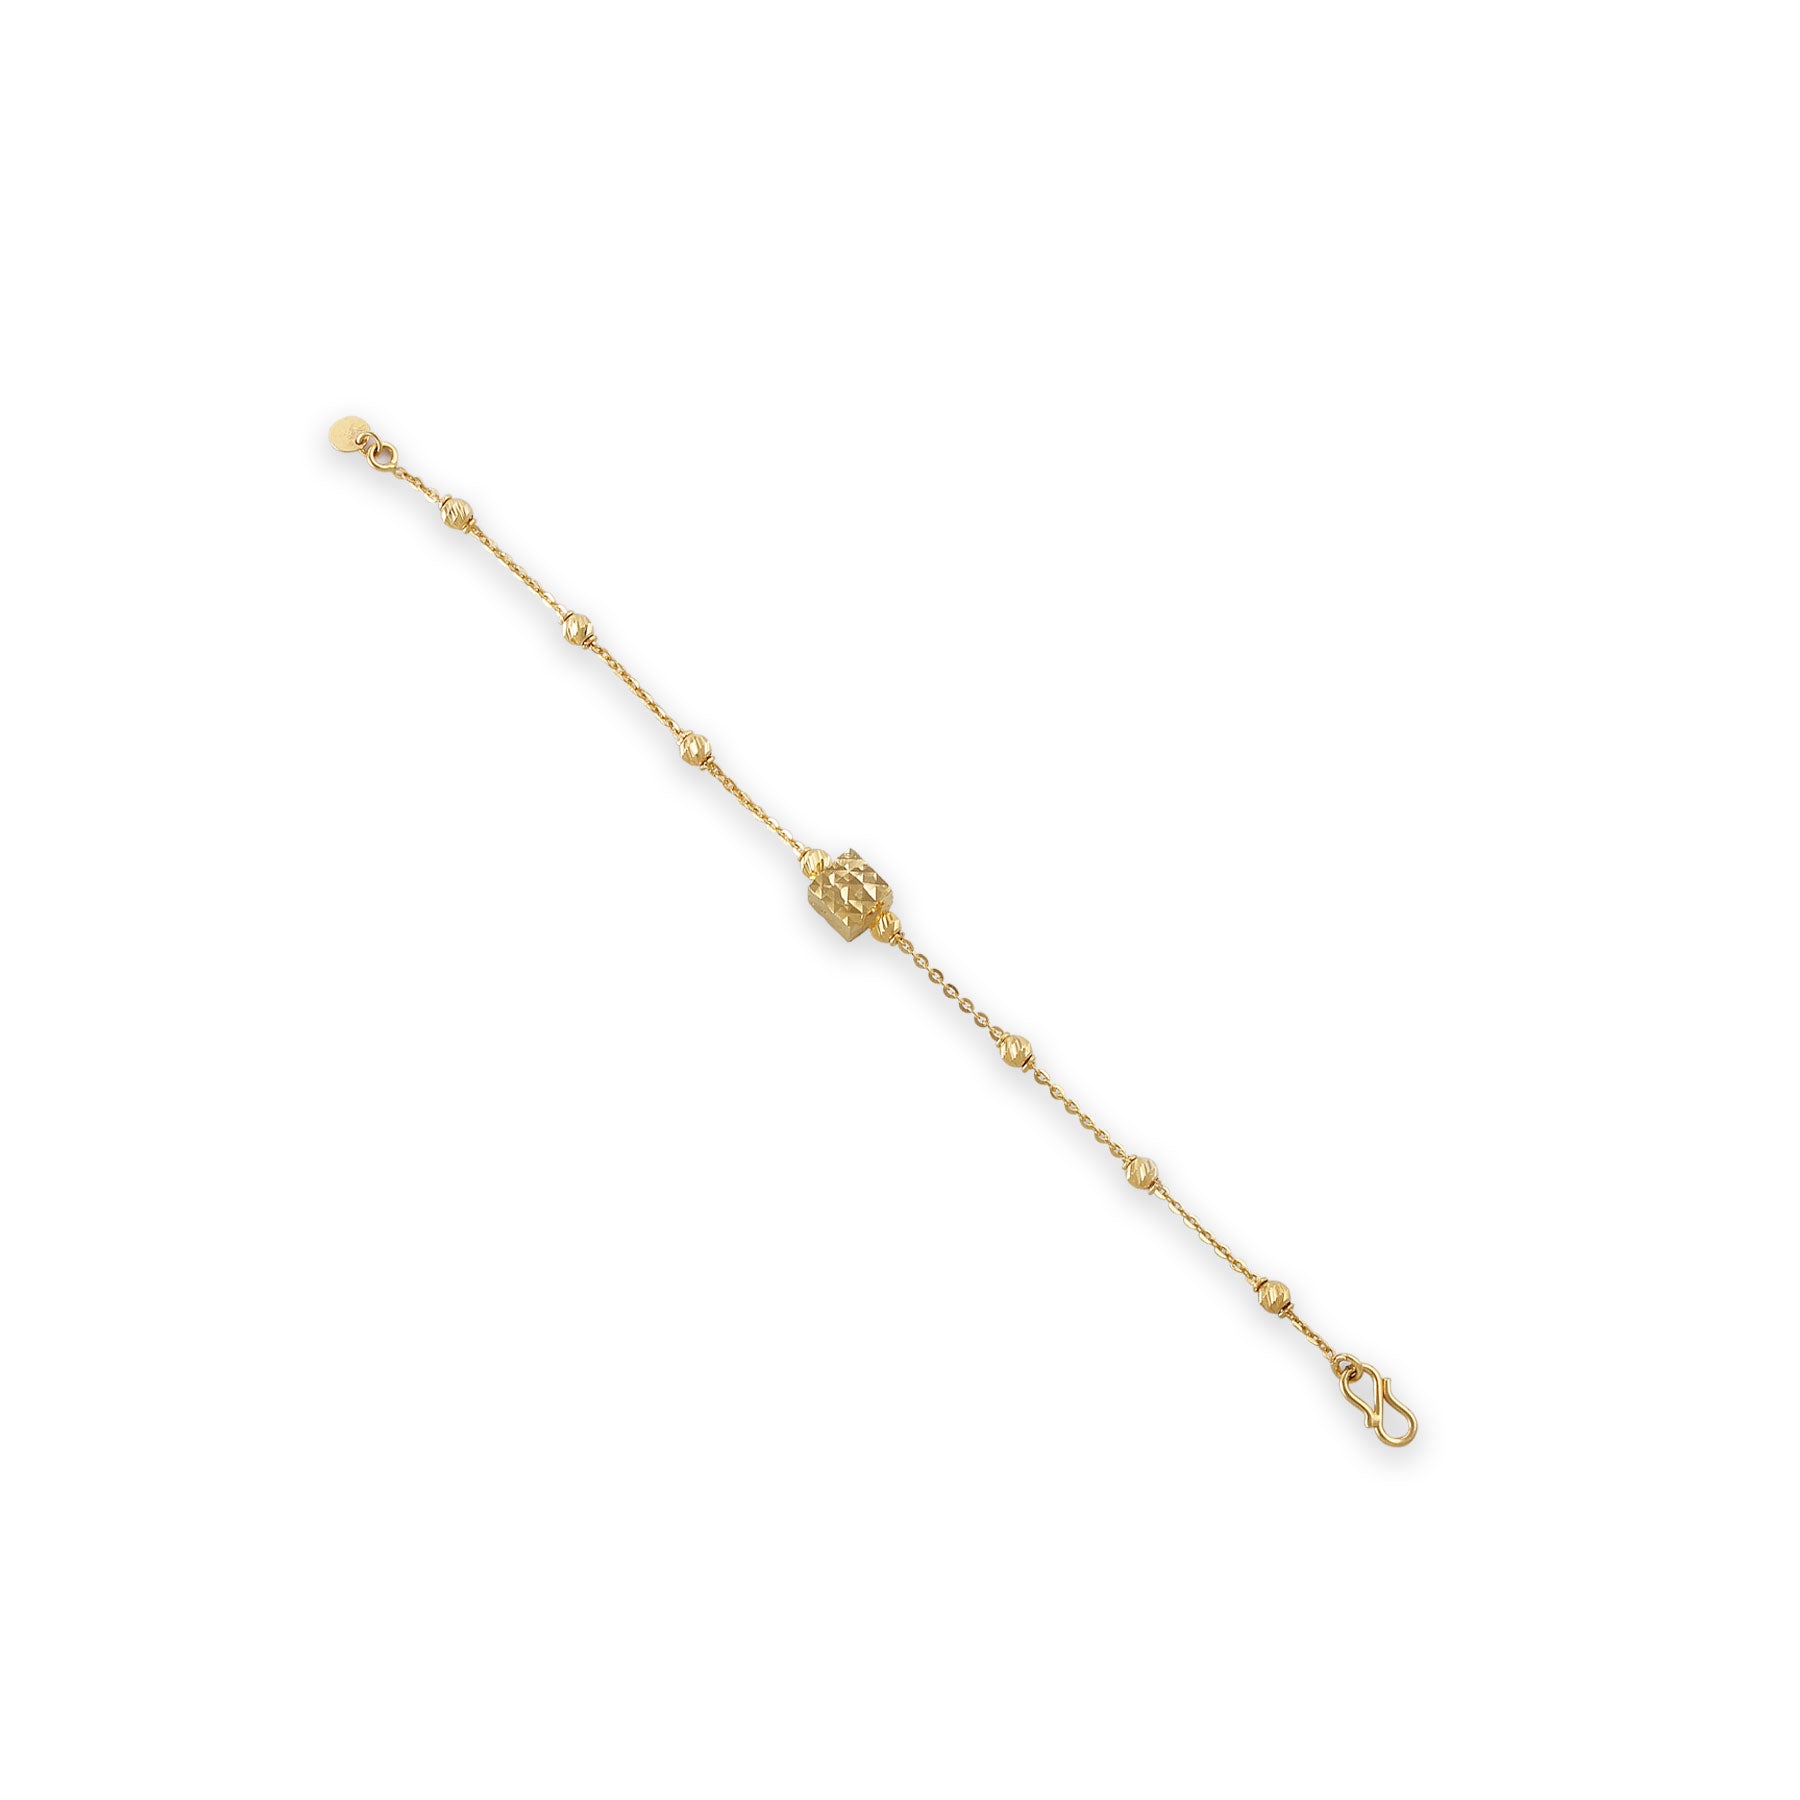 Buy Ladies Gold Bracelet Jewellery  Bracelets for Women